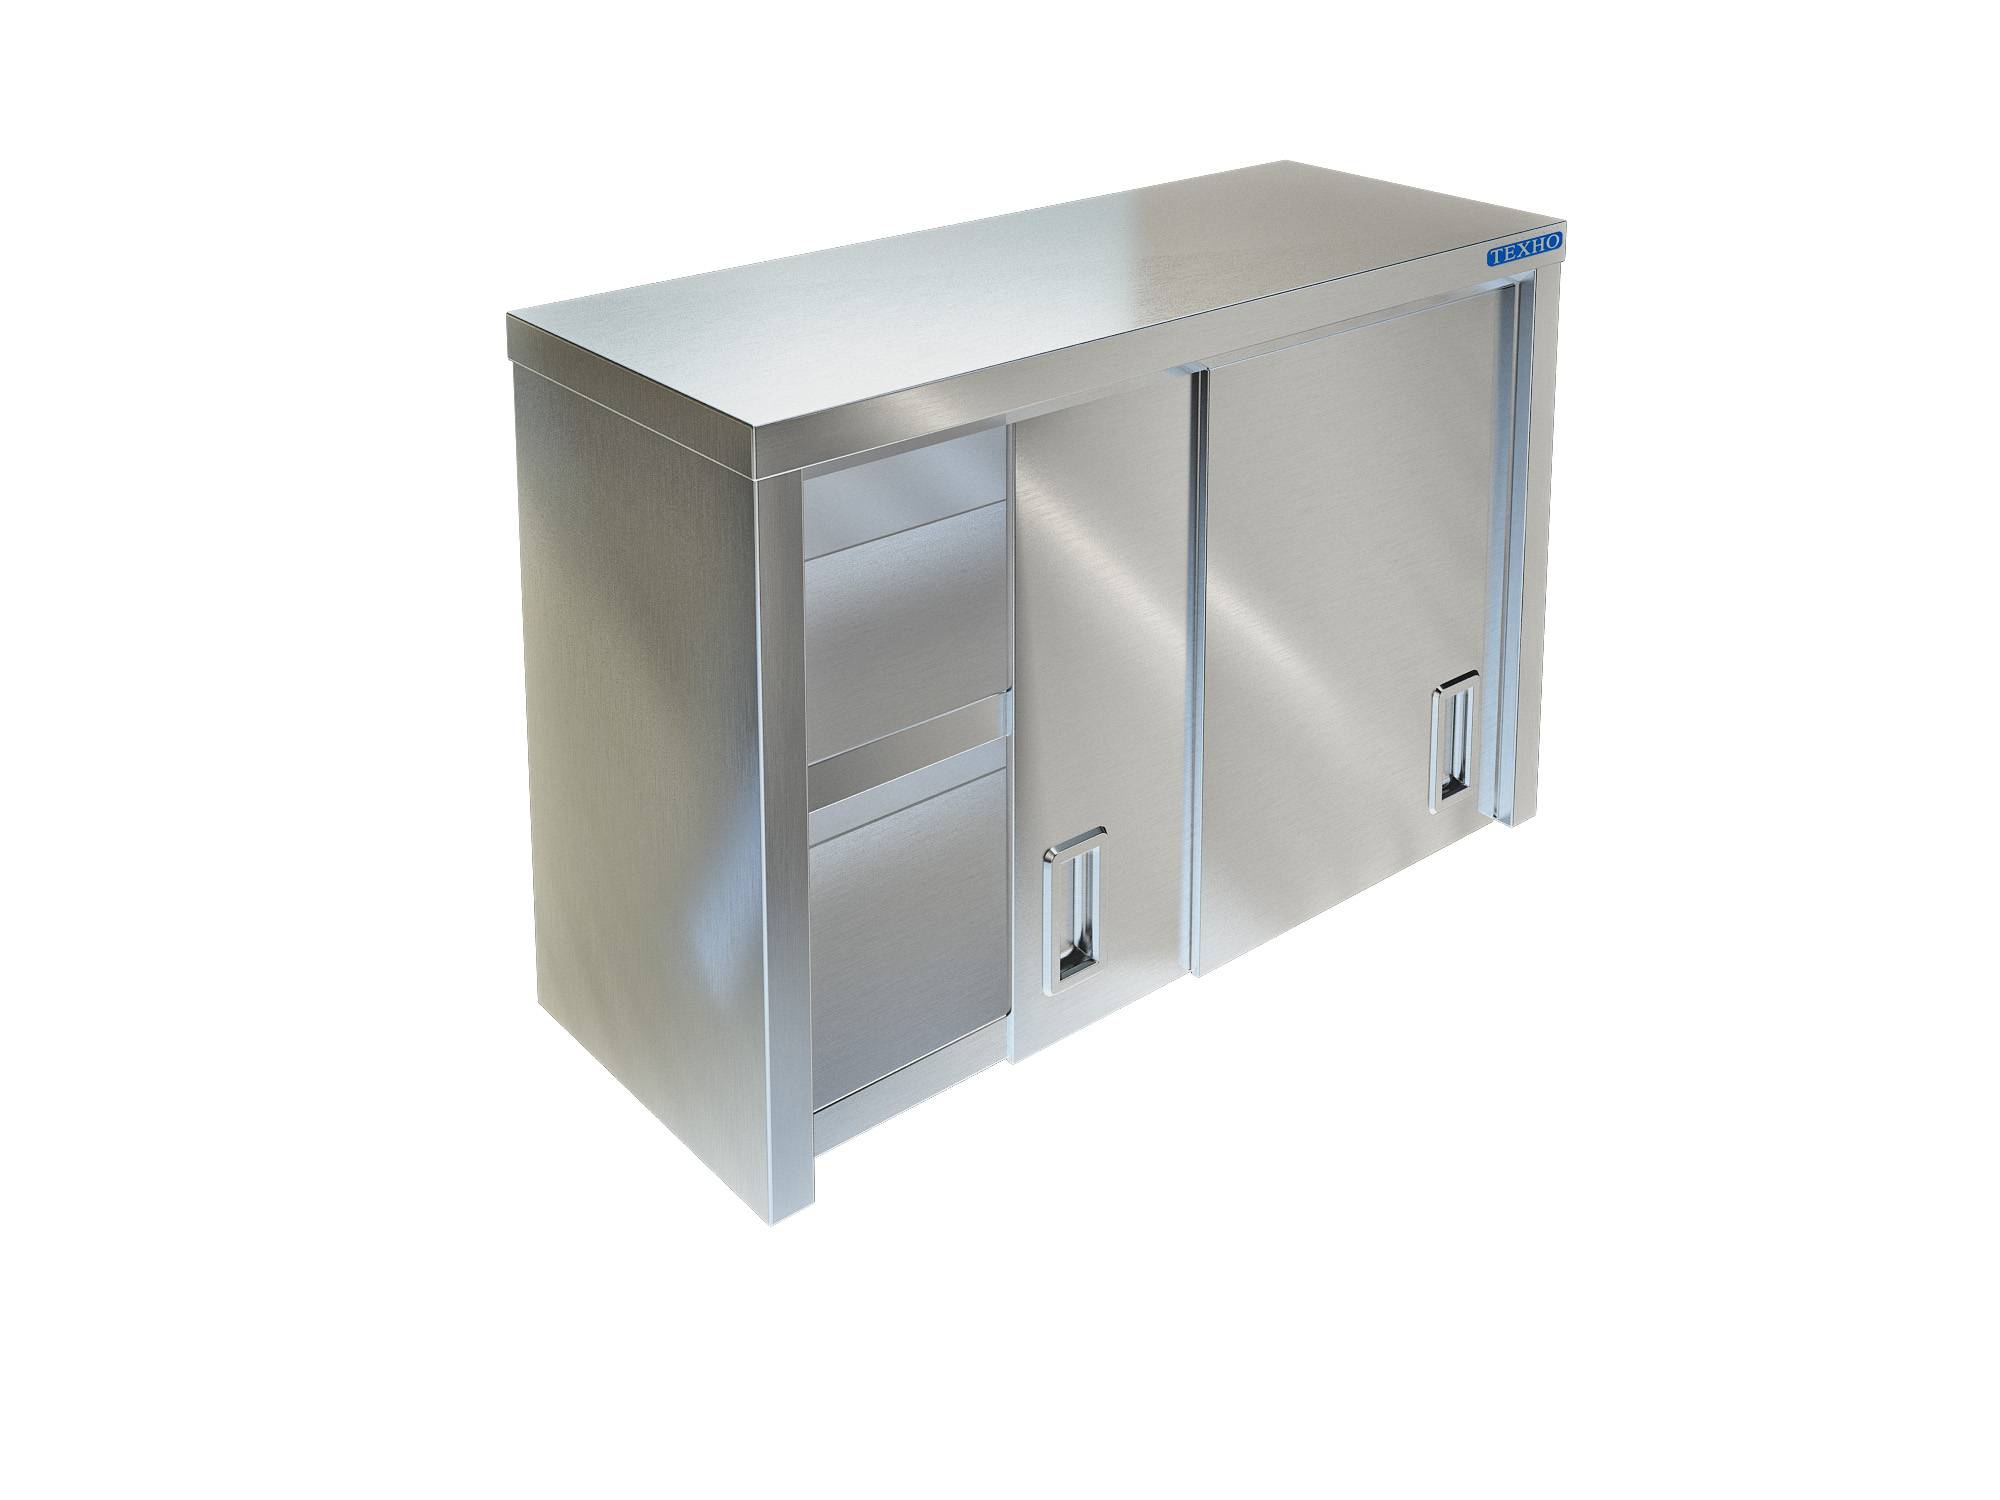 Фото - полка-шкаф для кухни с дверками из нержавейки пн-124/500 (500x350x600 мм)